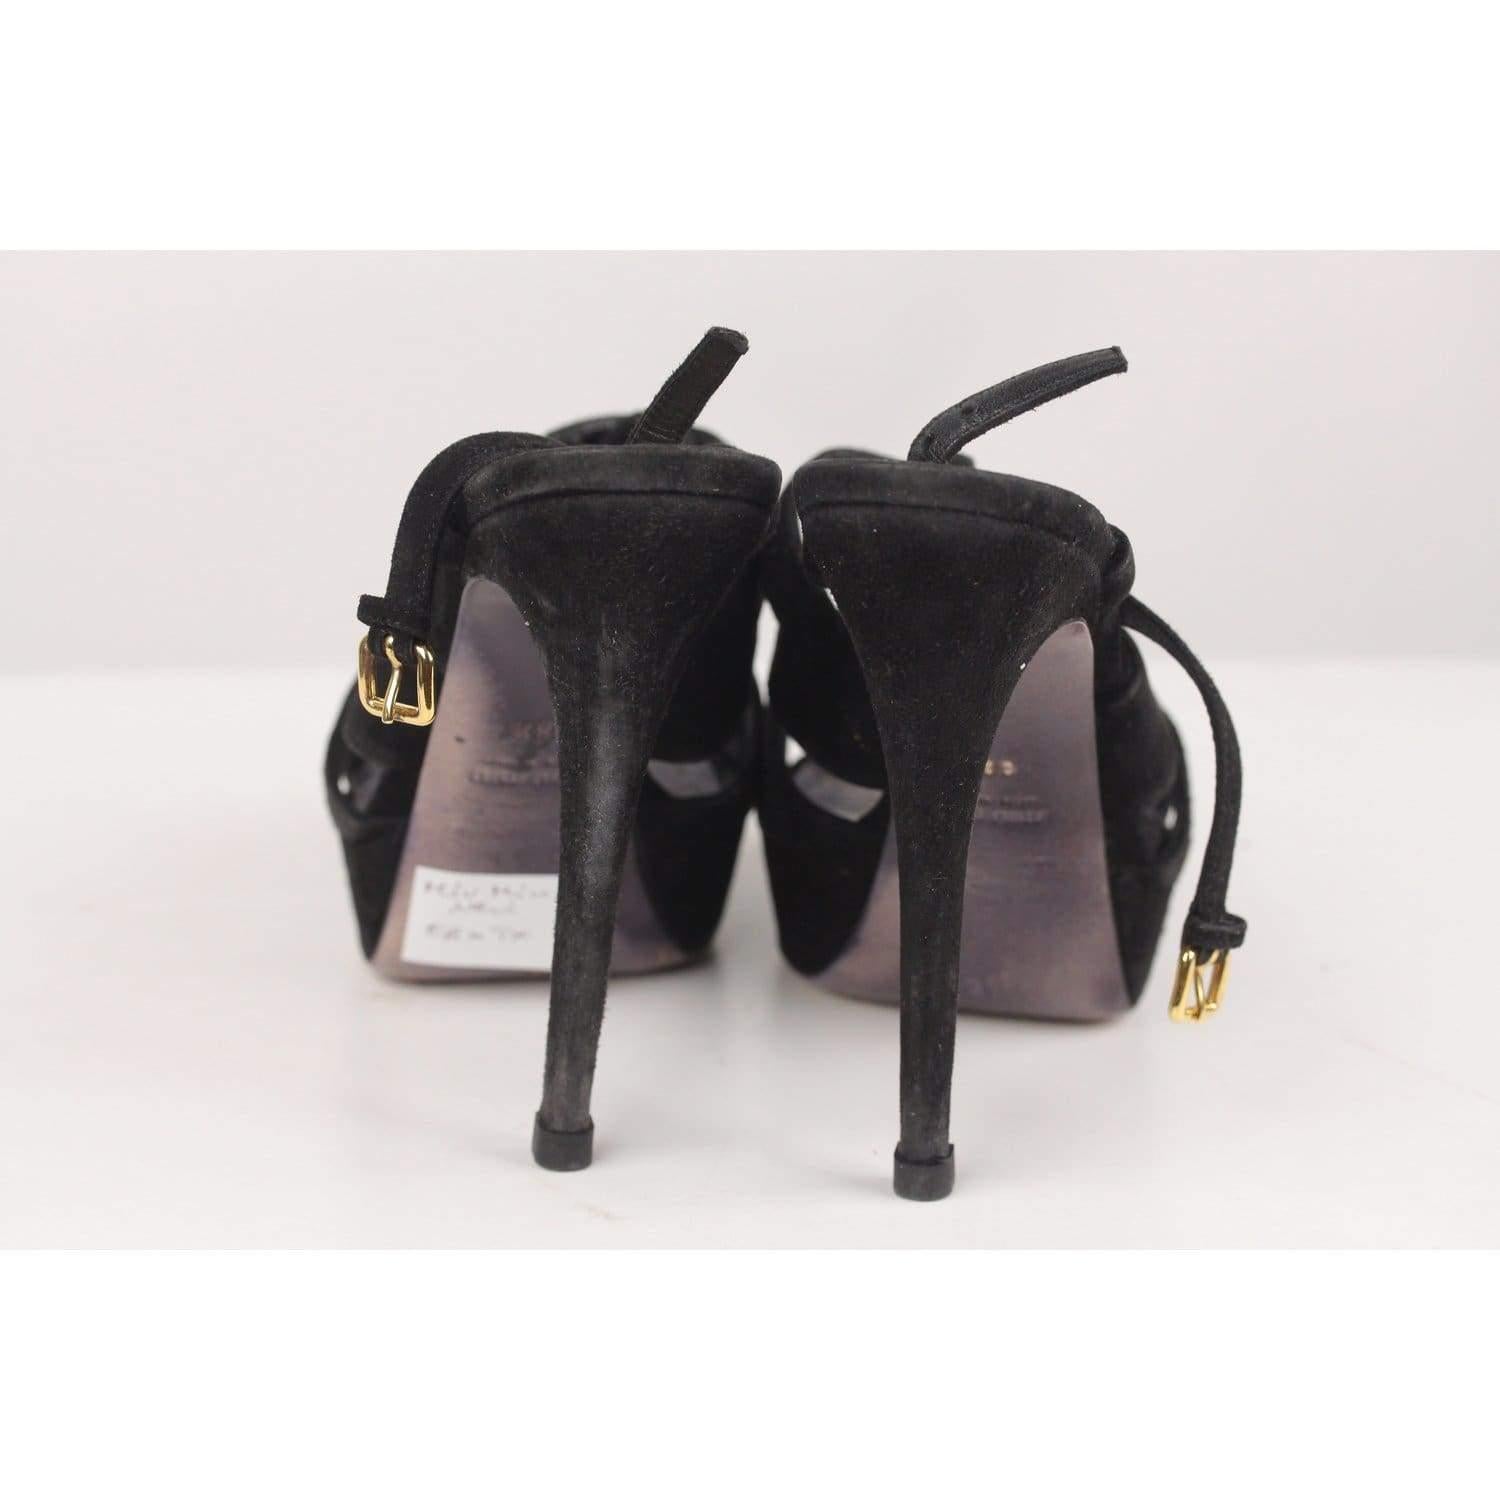 Black Miu Miu Strappy Sandals Pumps Heels Size 38.5